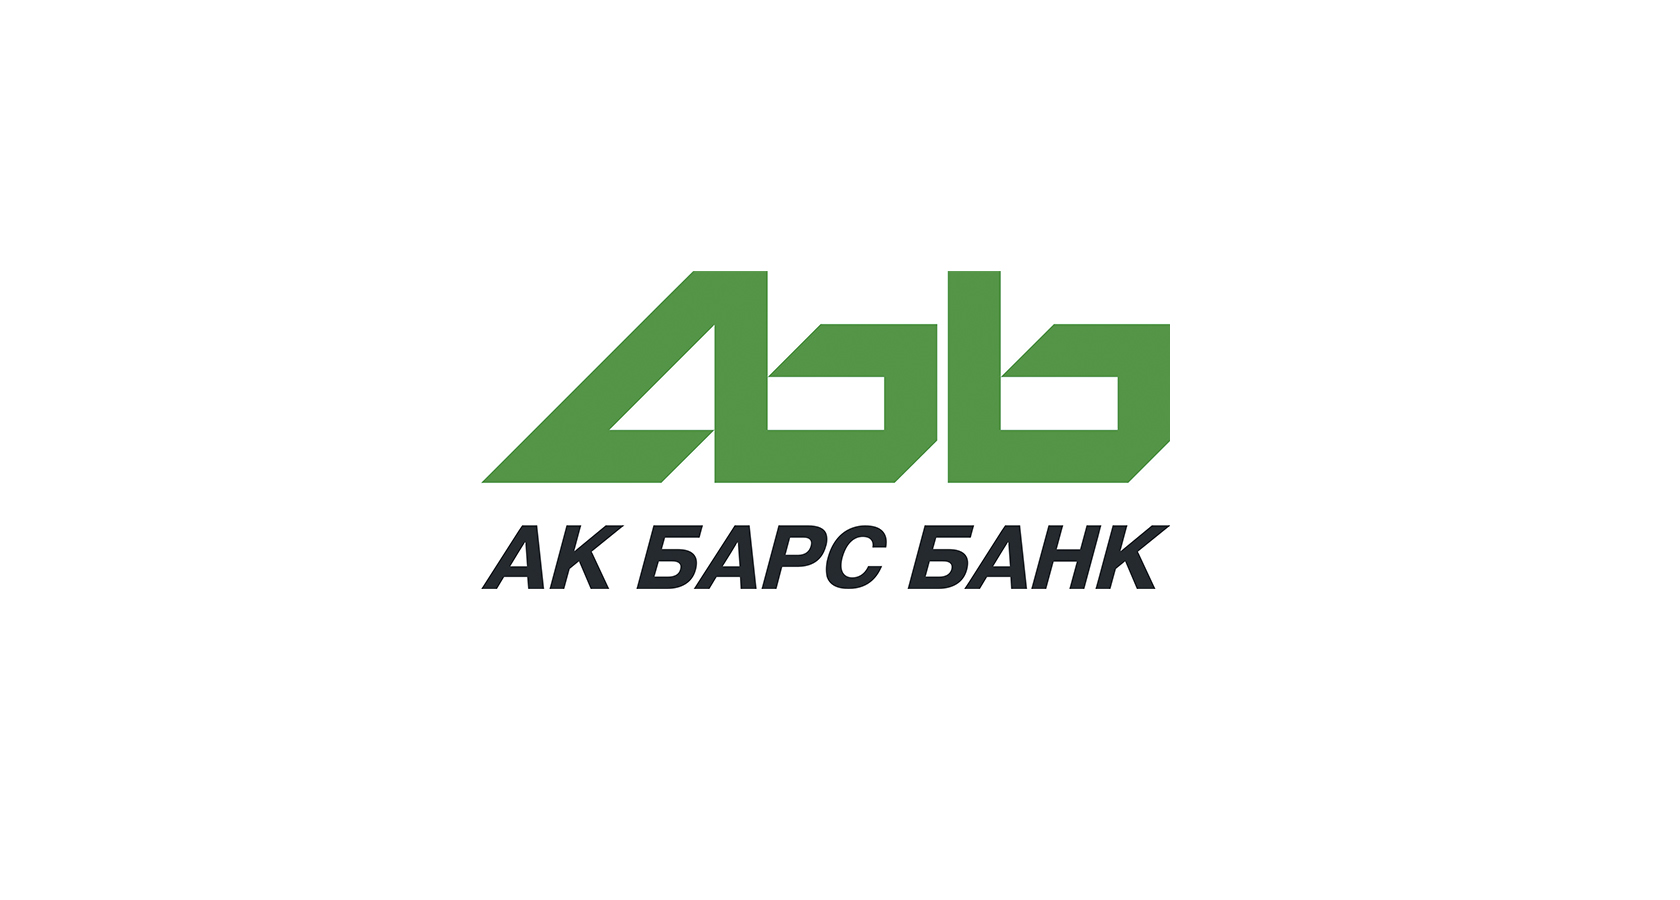 АК Барс банк. АК Барс банк логотип. Логотип АК Барс банка. Акбарсбанк санкт петербург